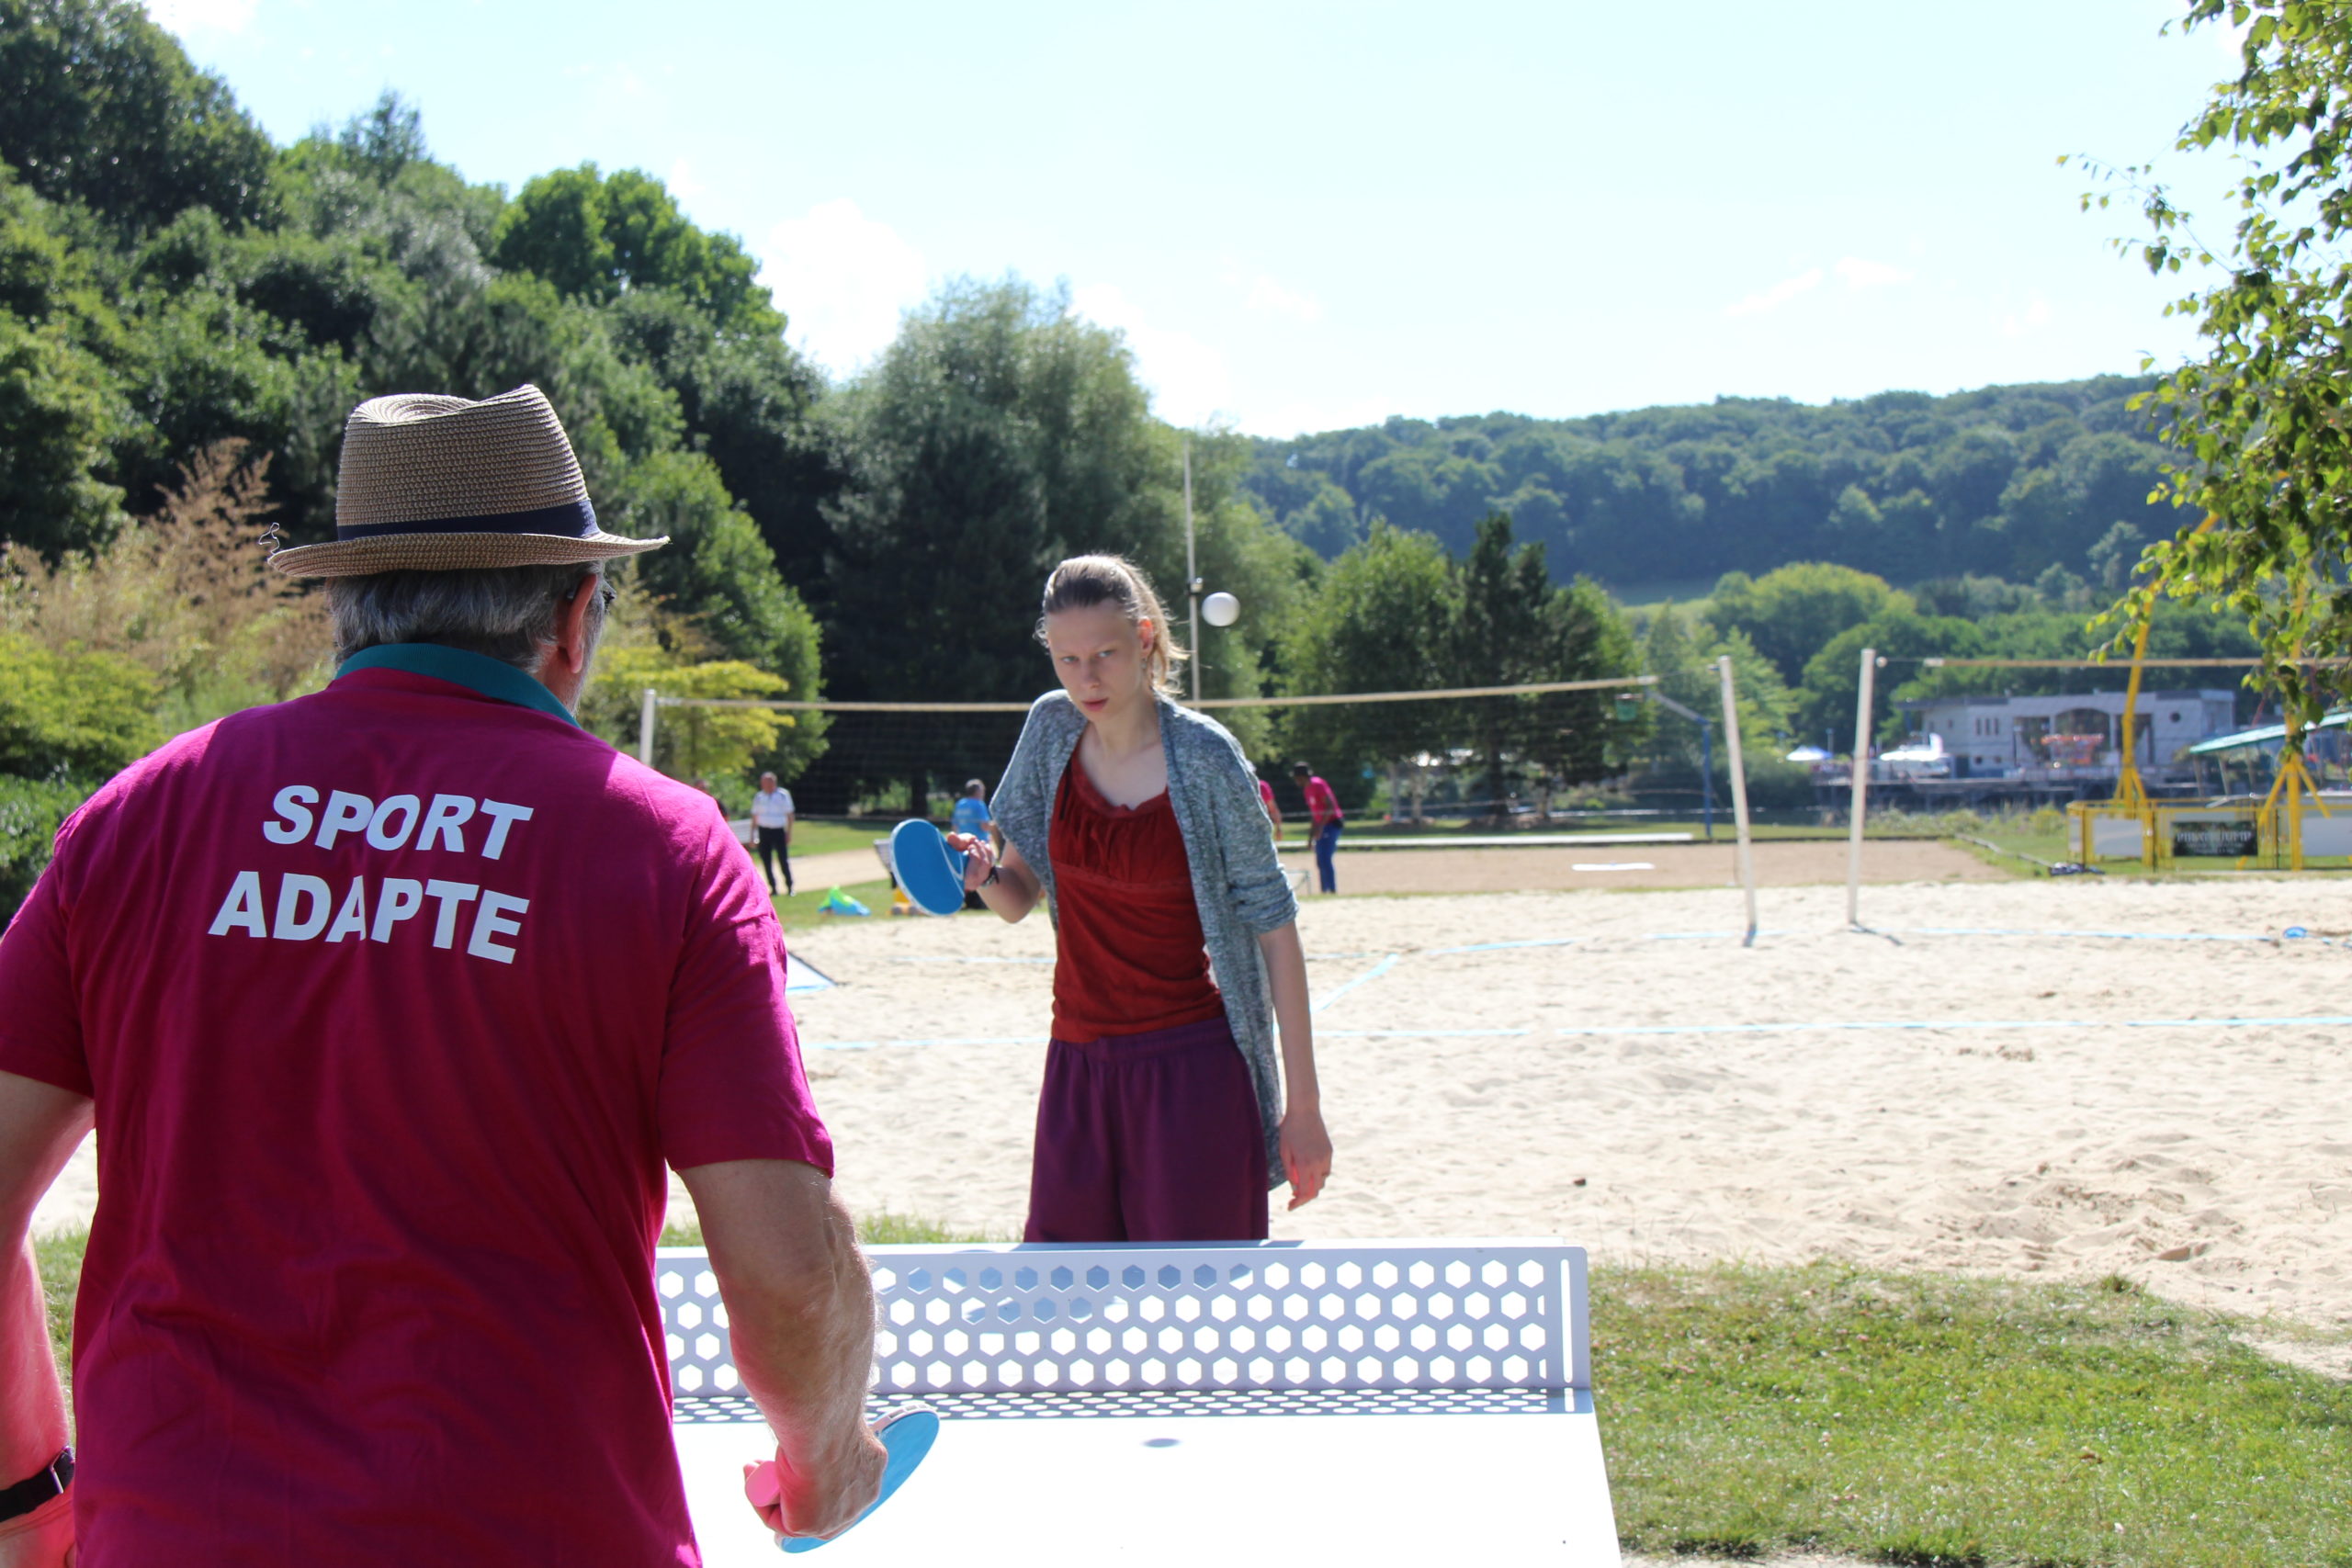 Une jeune femme joue au tennis de table contre un bénévole de la Journée Départementale de Sport Adapté